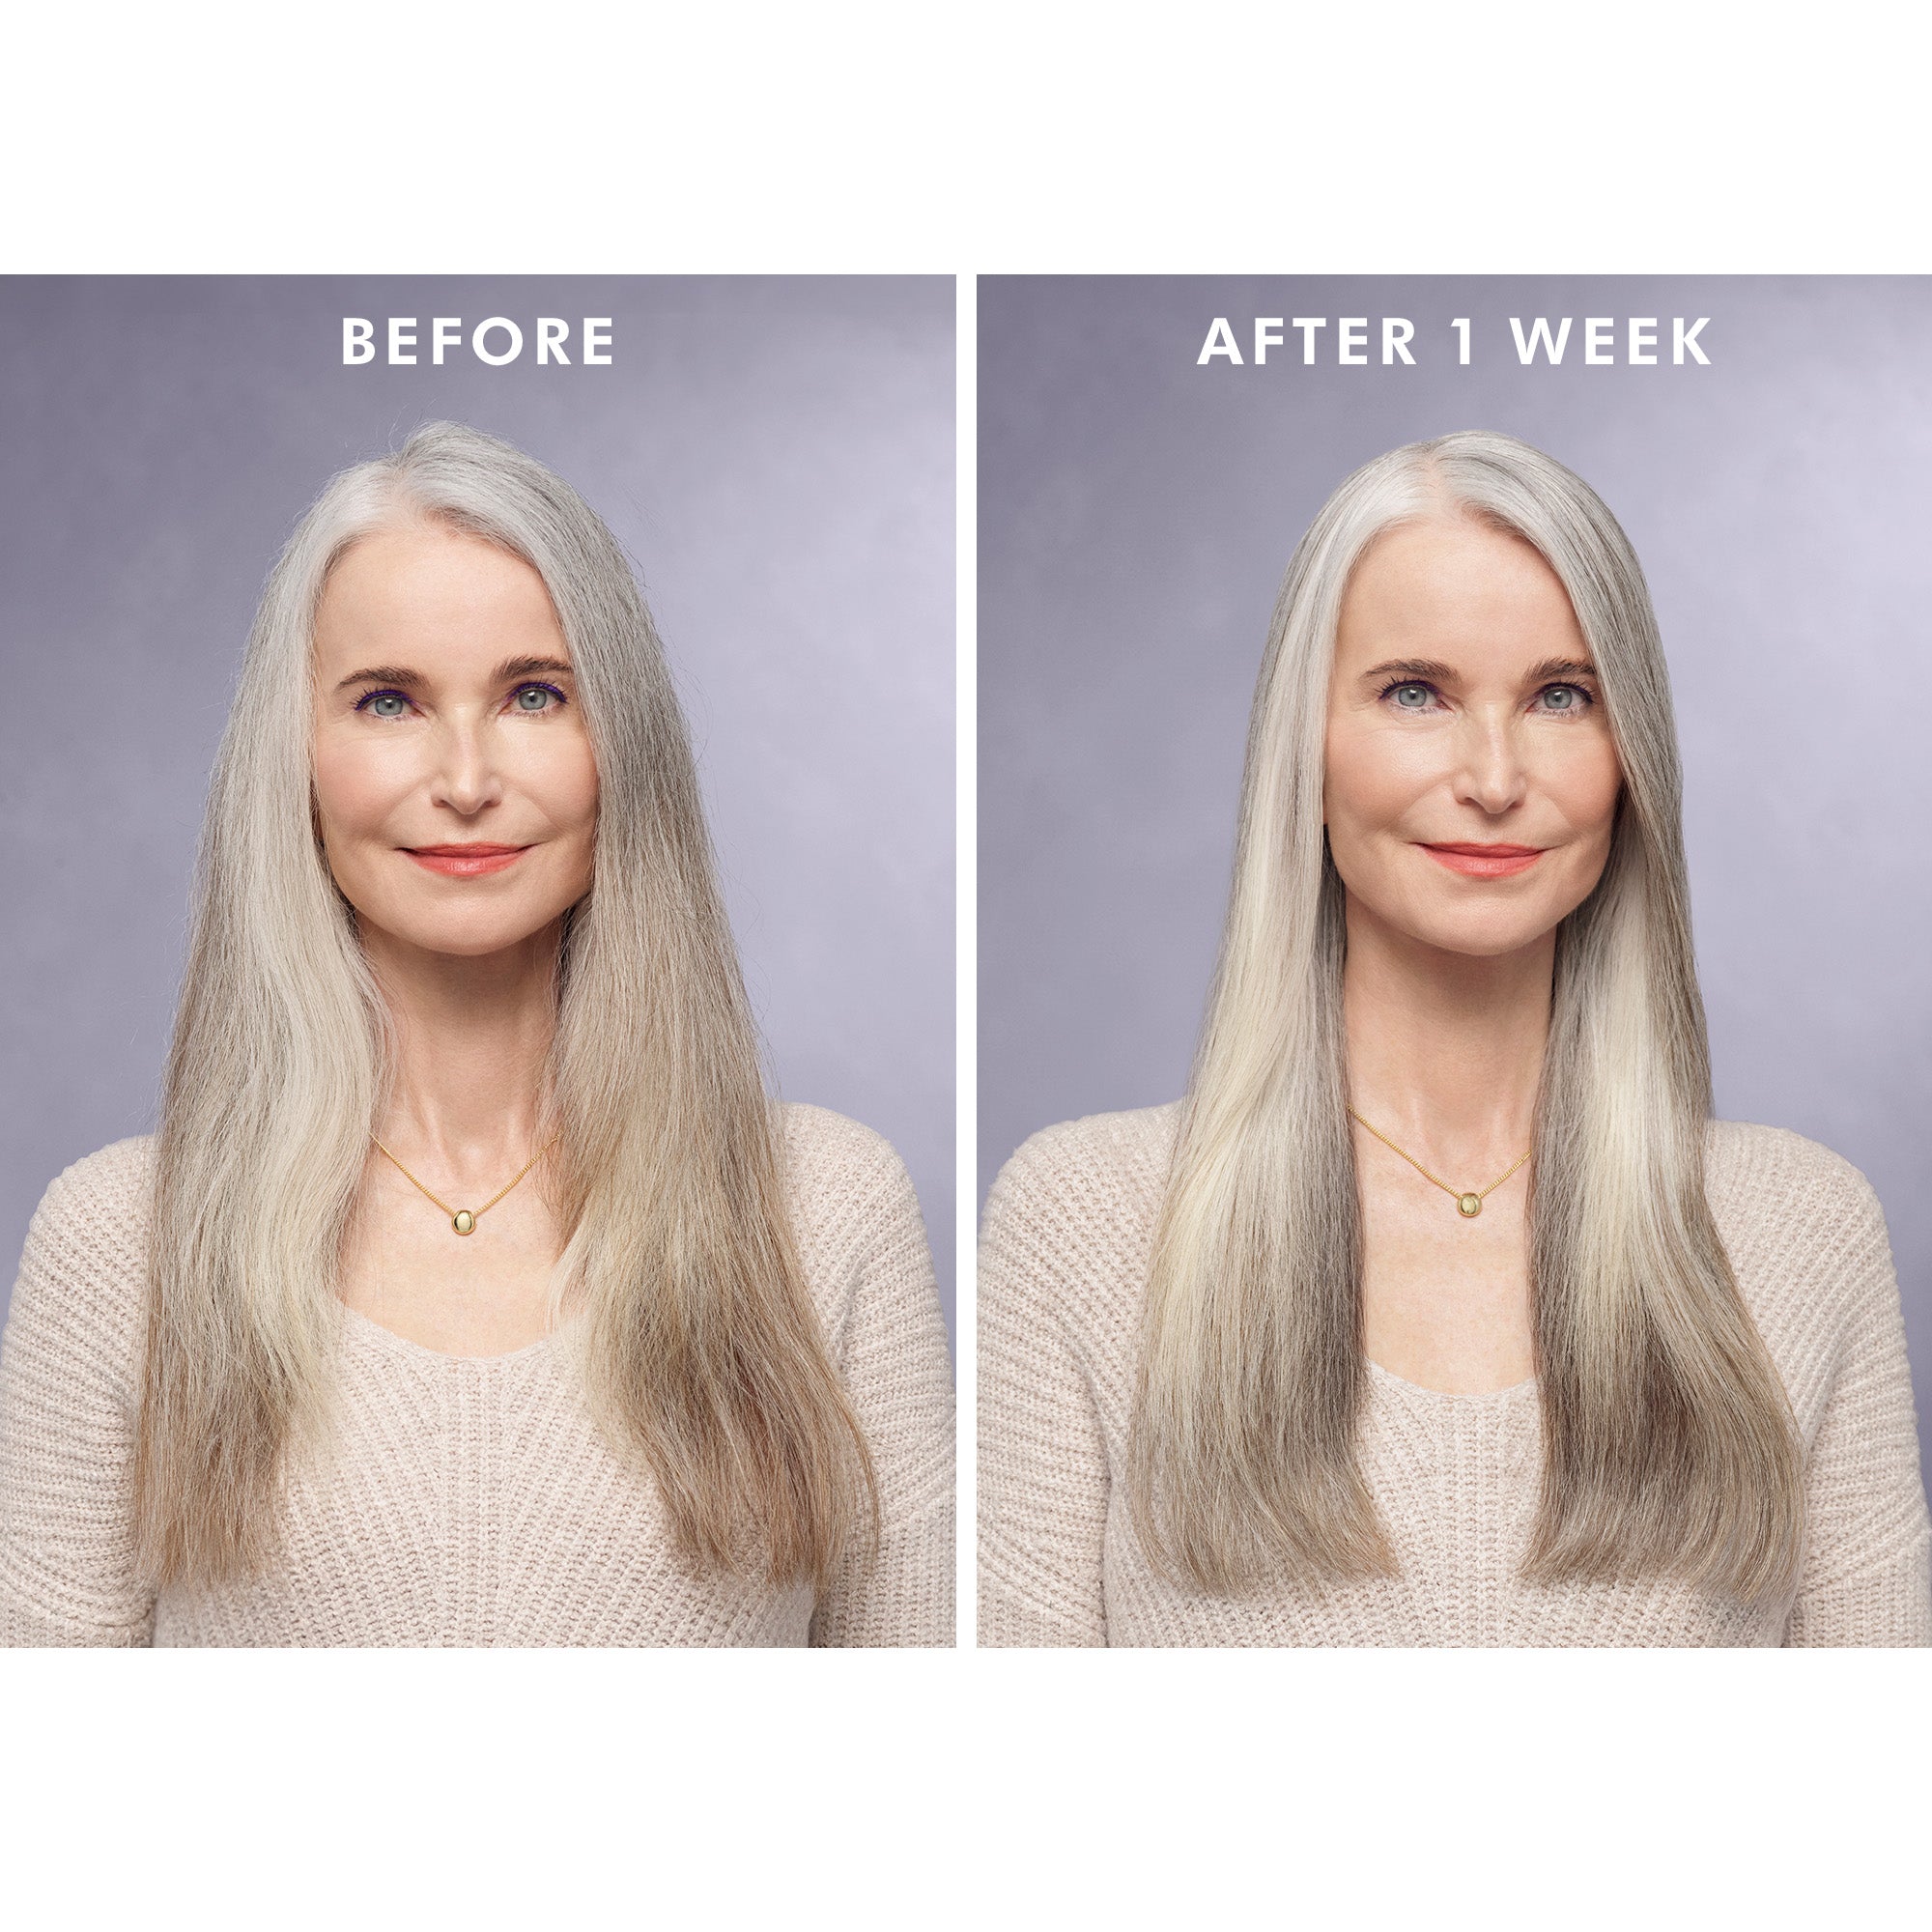 תמונות של לפני ואחרי שבוע של שימוש בשמן בשיער אפור